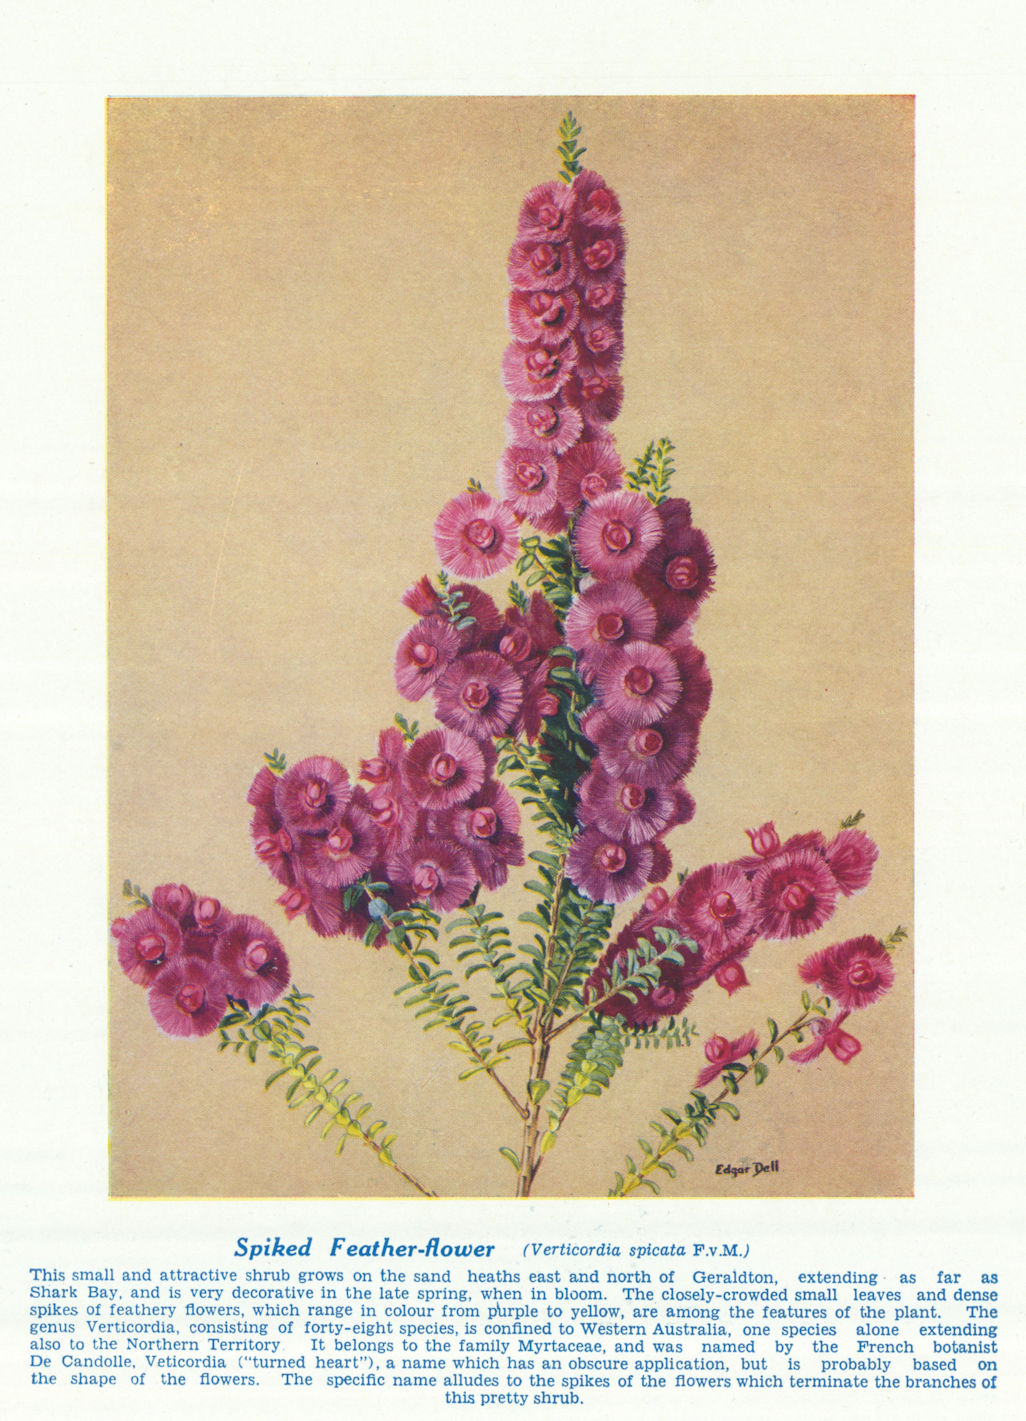 Spiked Feather-flower (Verticordia spicata). West Australian Wild Flowers 1950